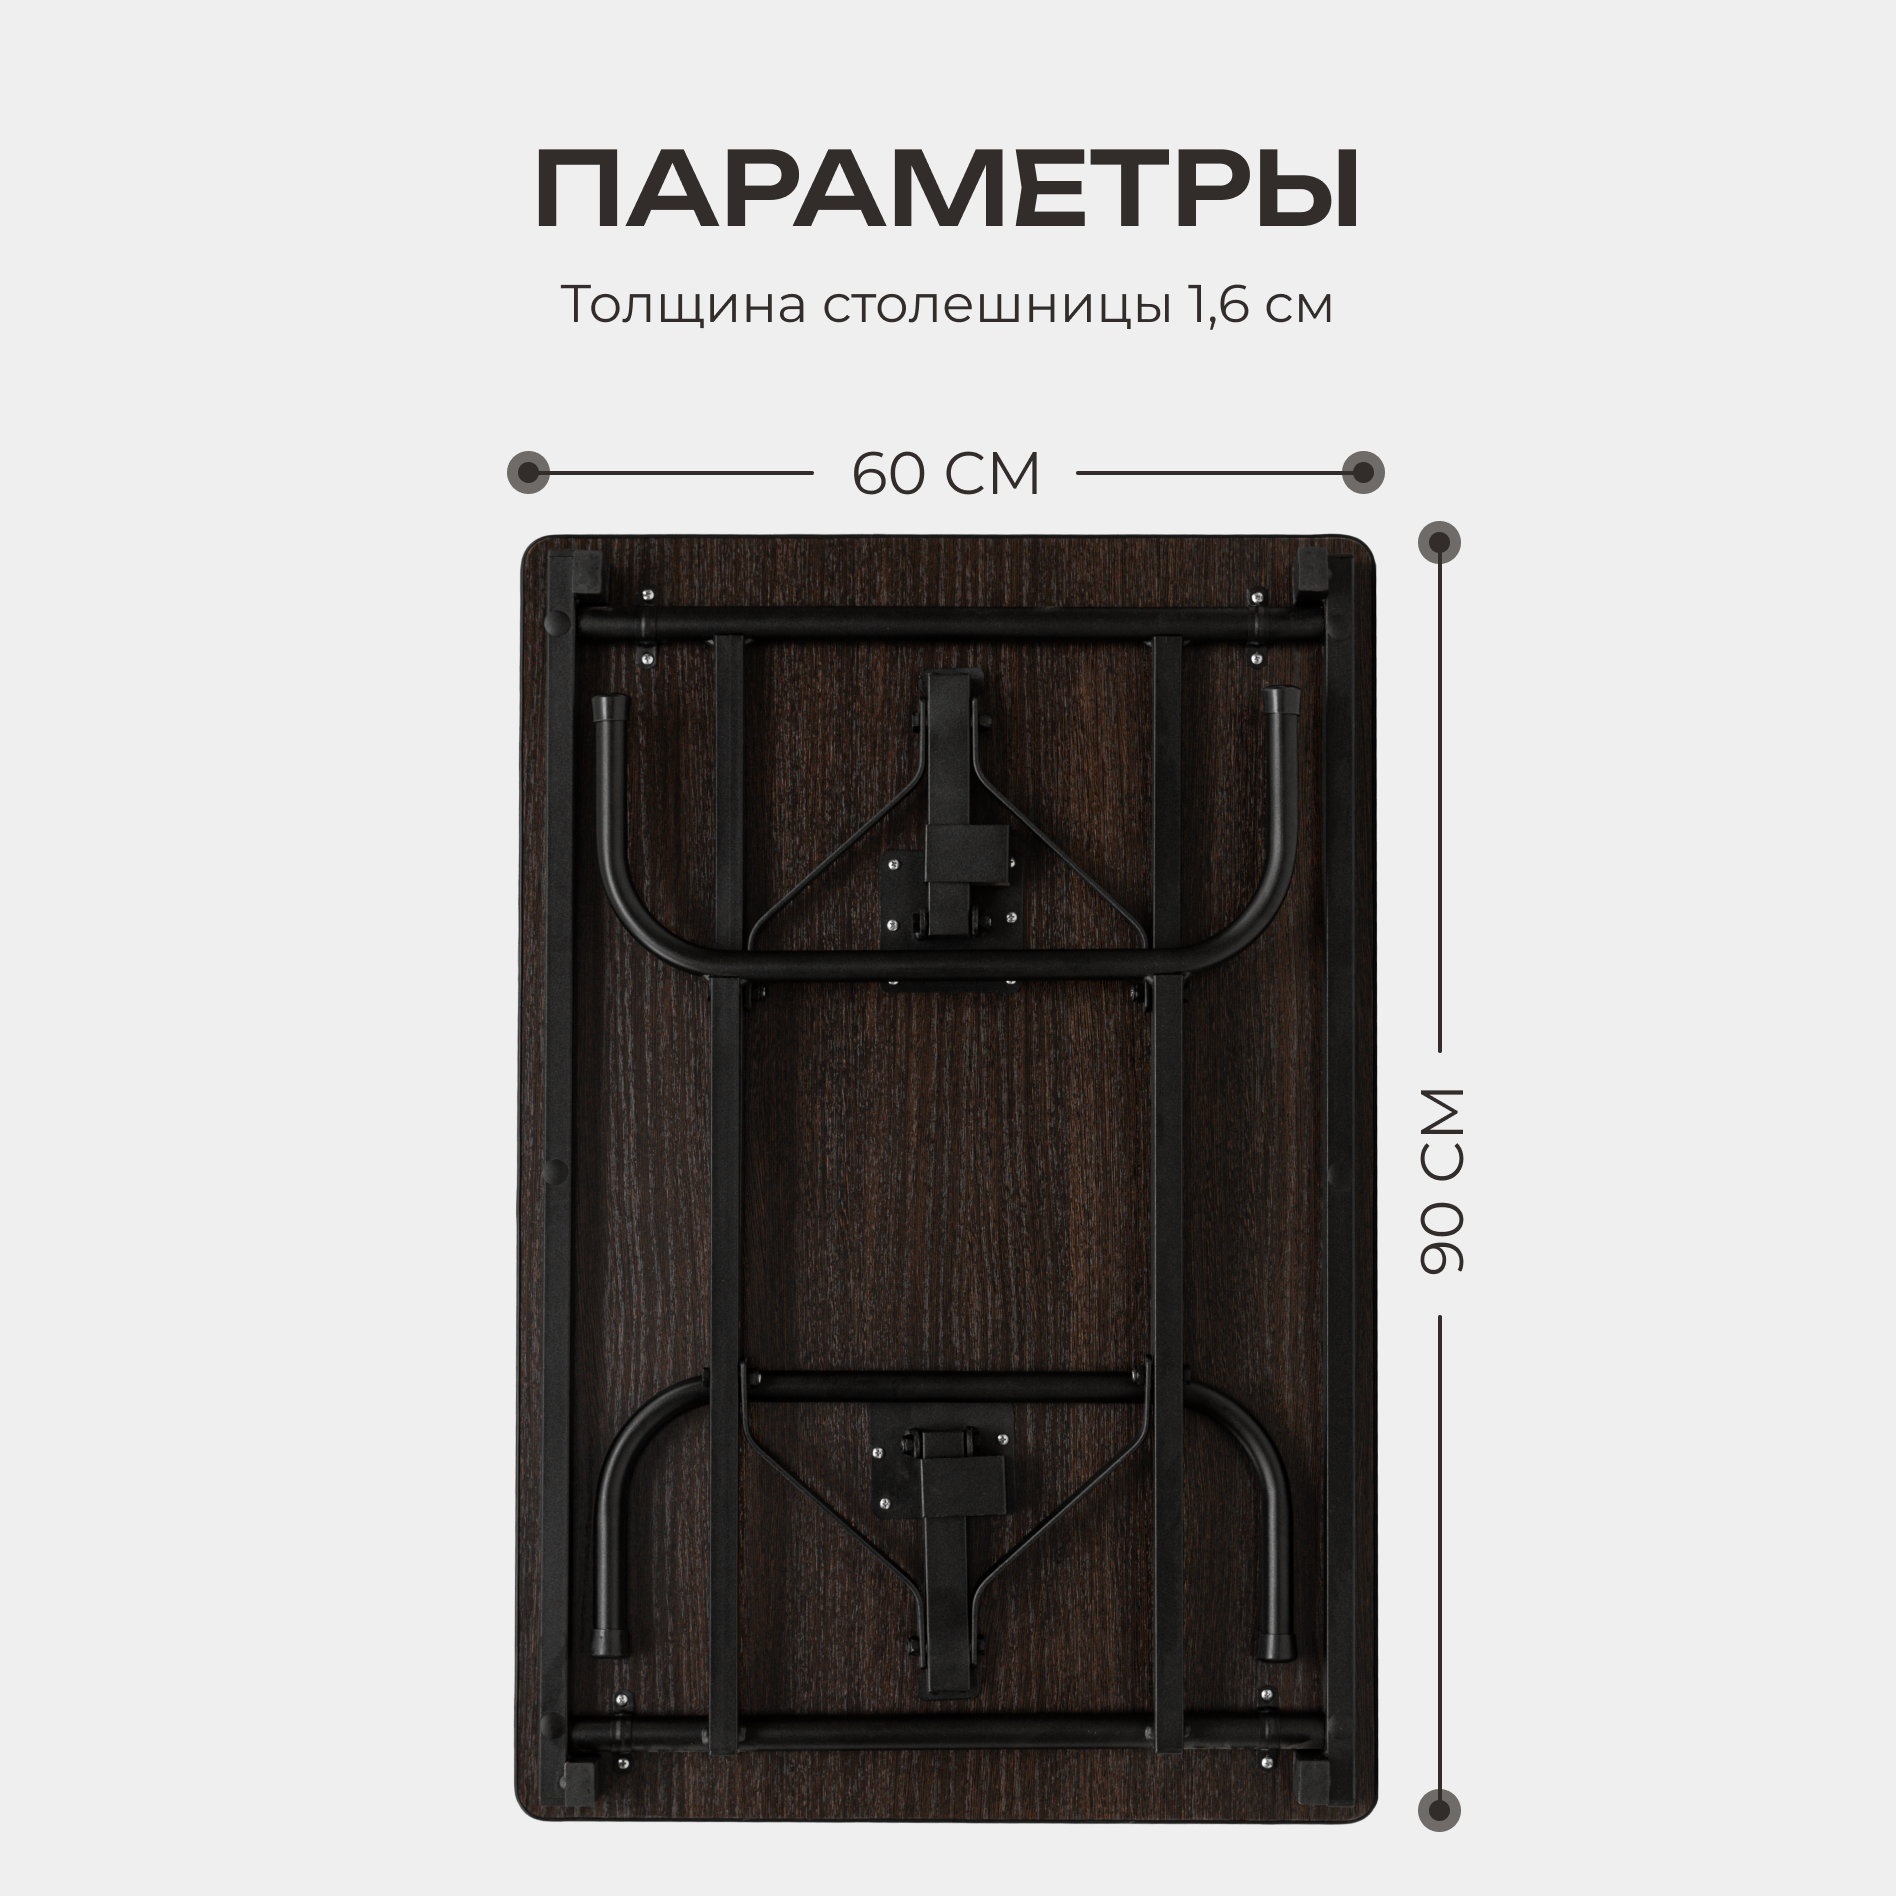 Стол складной раскладной прямоугольный кухонный, письменный, 60х90х75 см столешница - венге, каркас - черный